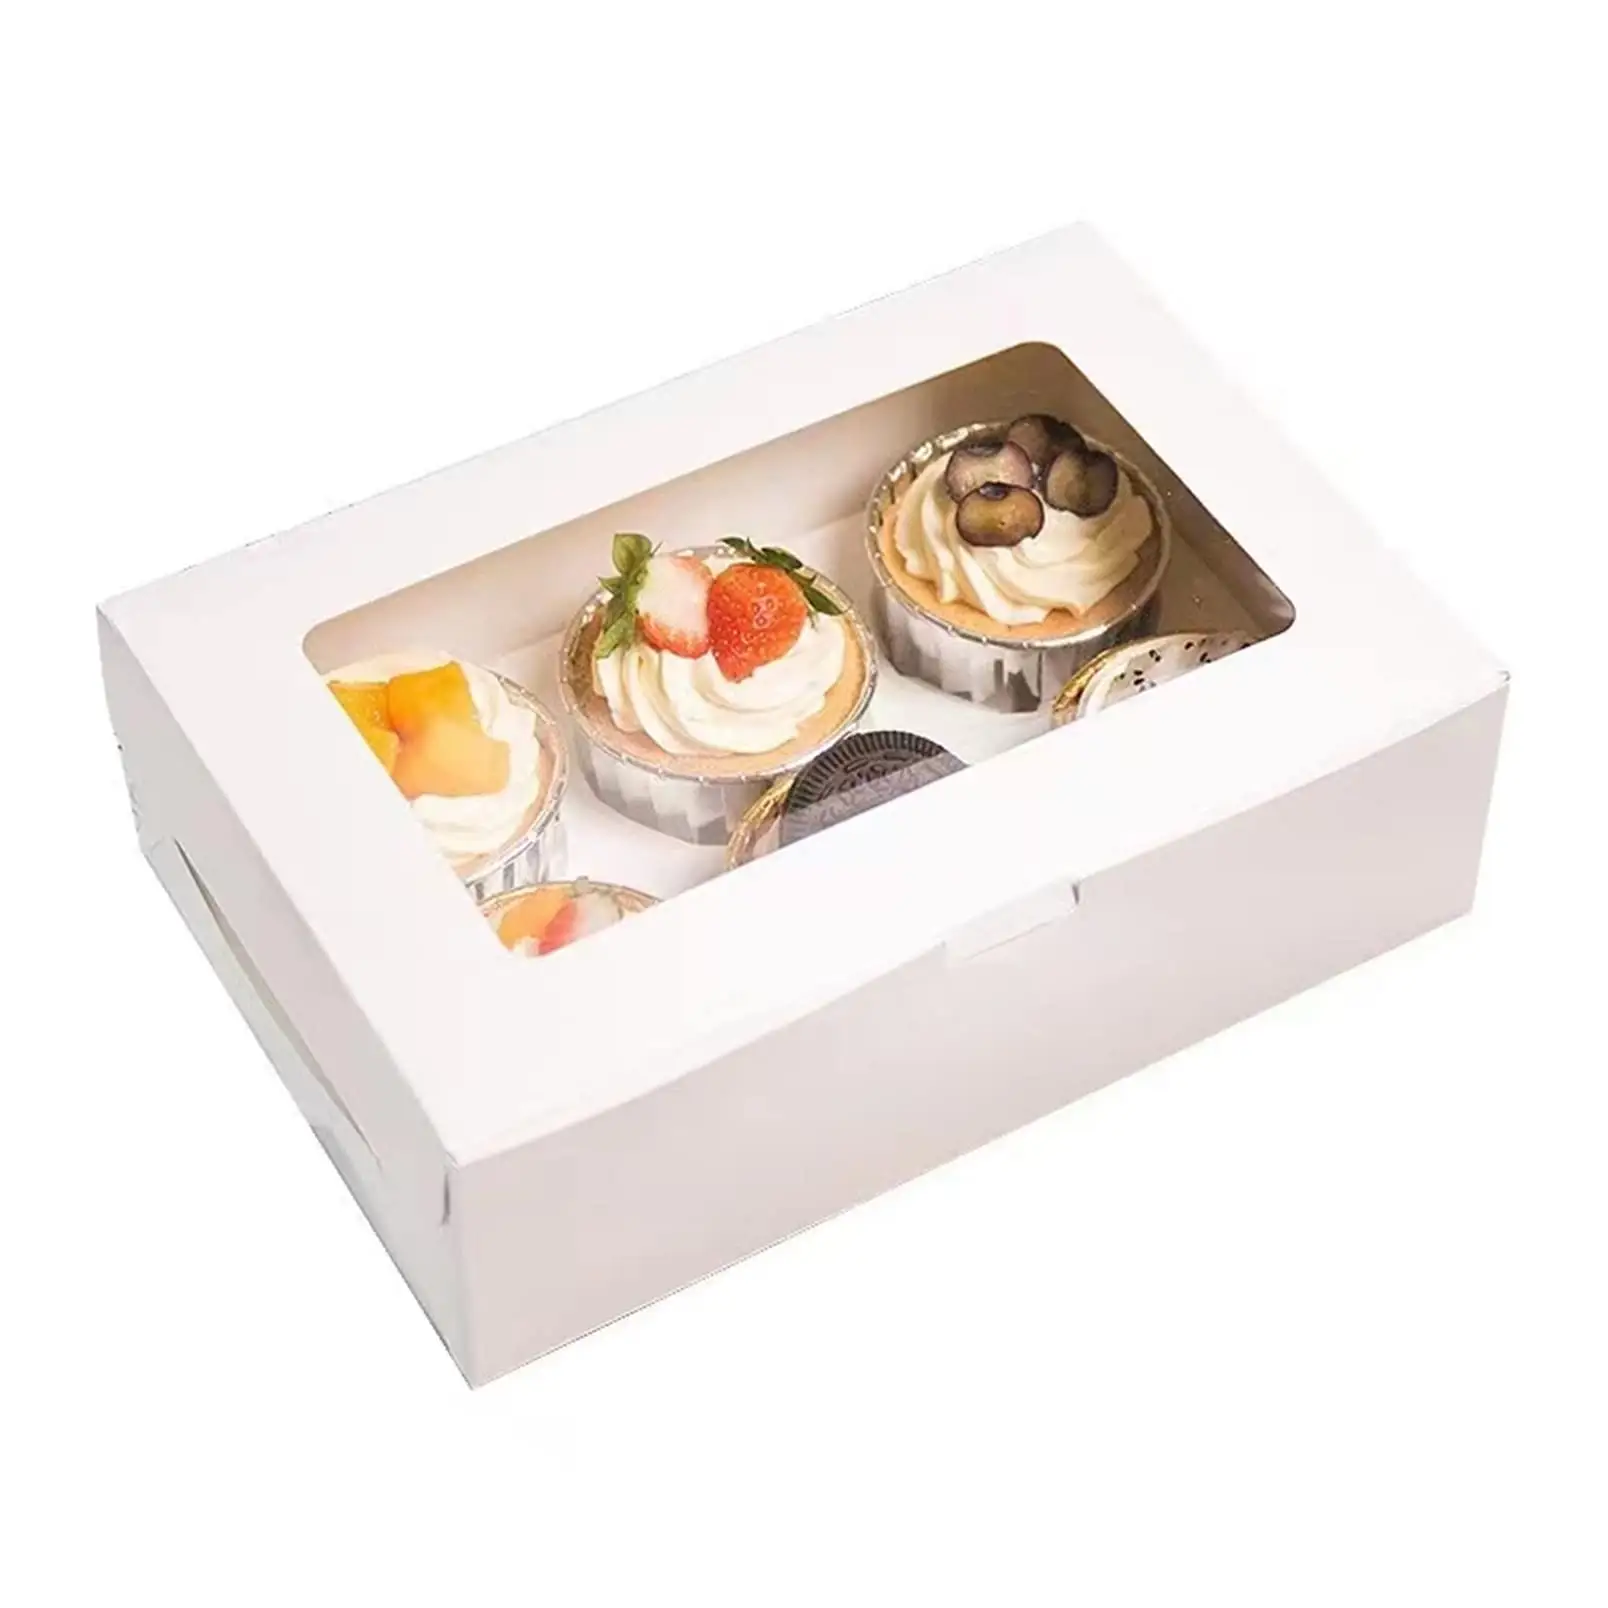 Bulk mit klarem Anzeige fenster Halten Sie 6 Standard-Cupcakes Einweg-Cupcake-Träger behälter für weiße Cupcake-Träger in Lebensmittel qualität